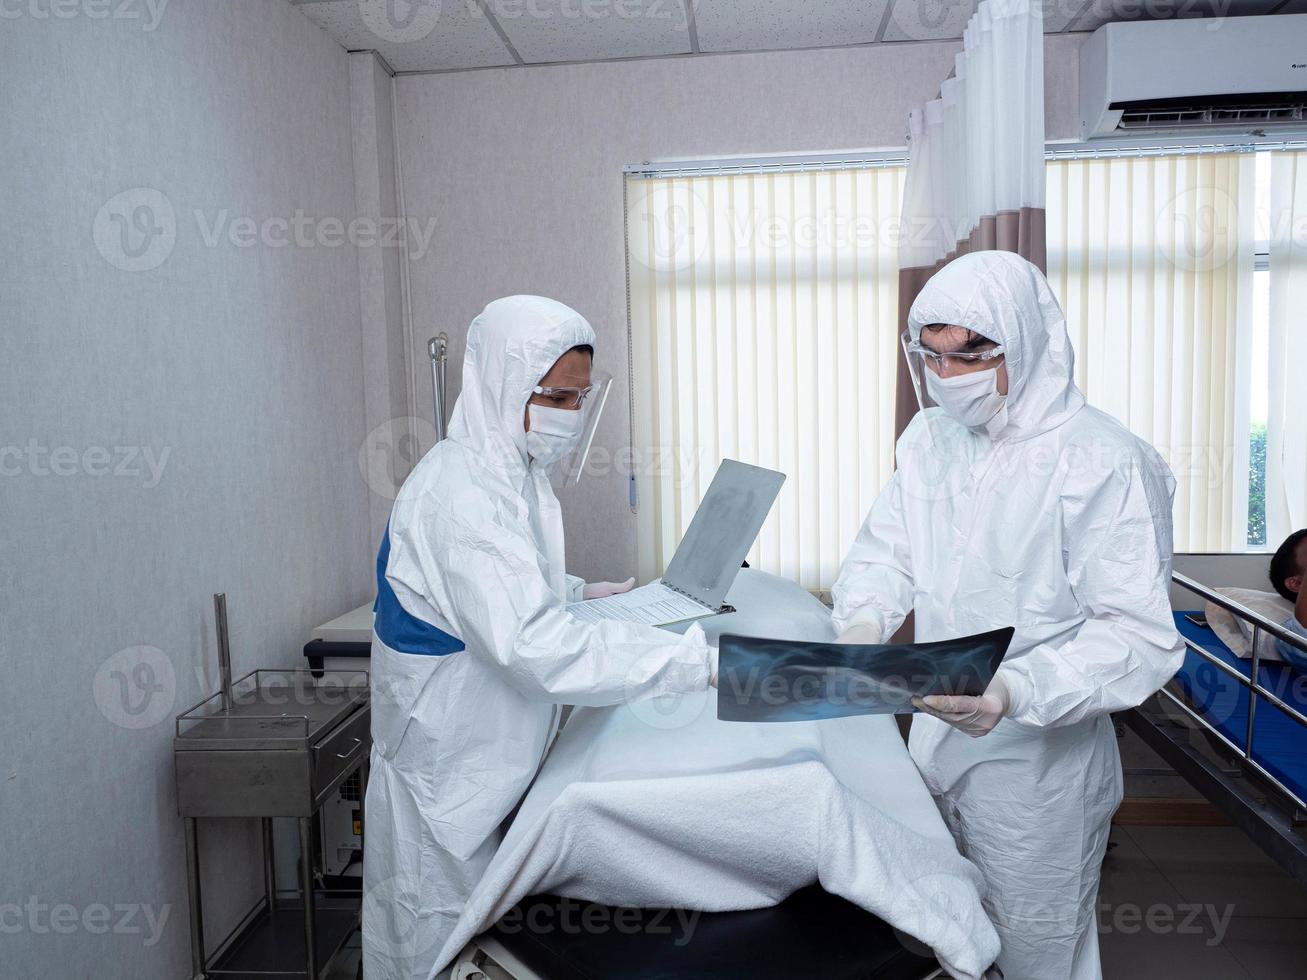 krankenhaus klinik laborstation arzt wissenschaftler tragen psa weiße uniform krankbett patient geschäftsleute behandlung gesundheitswesen film röntgen covid-19 indien afrika corona krankheit medizinischer schutz impfstoff foto